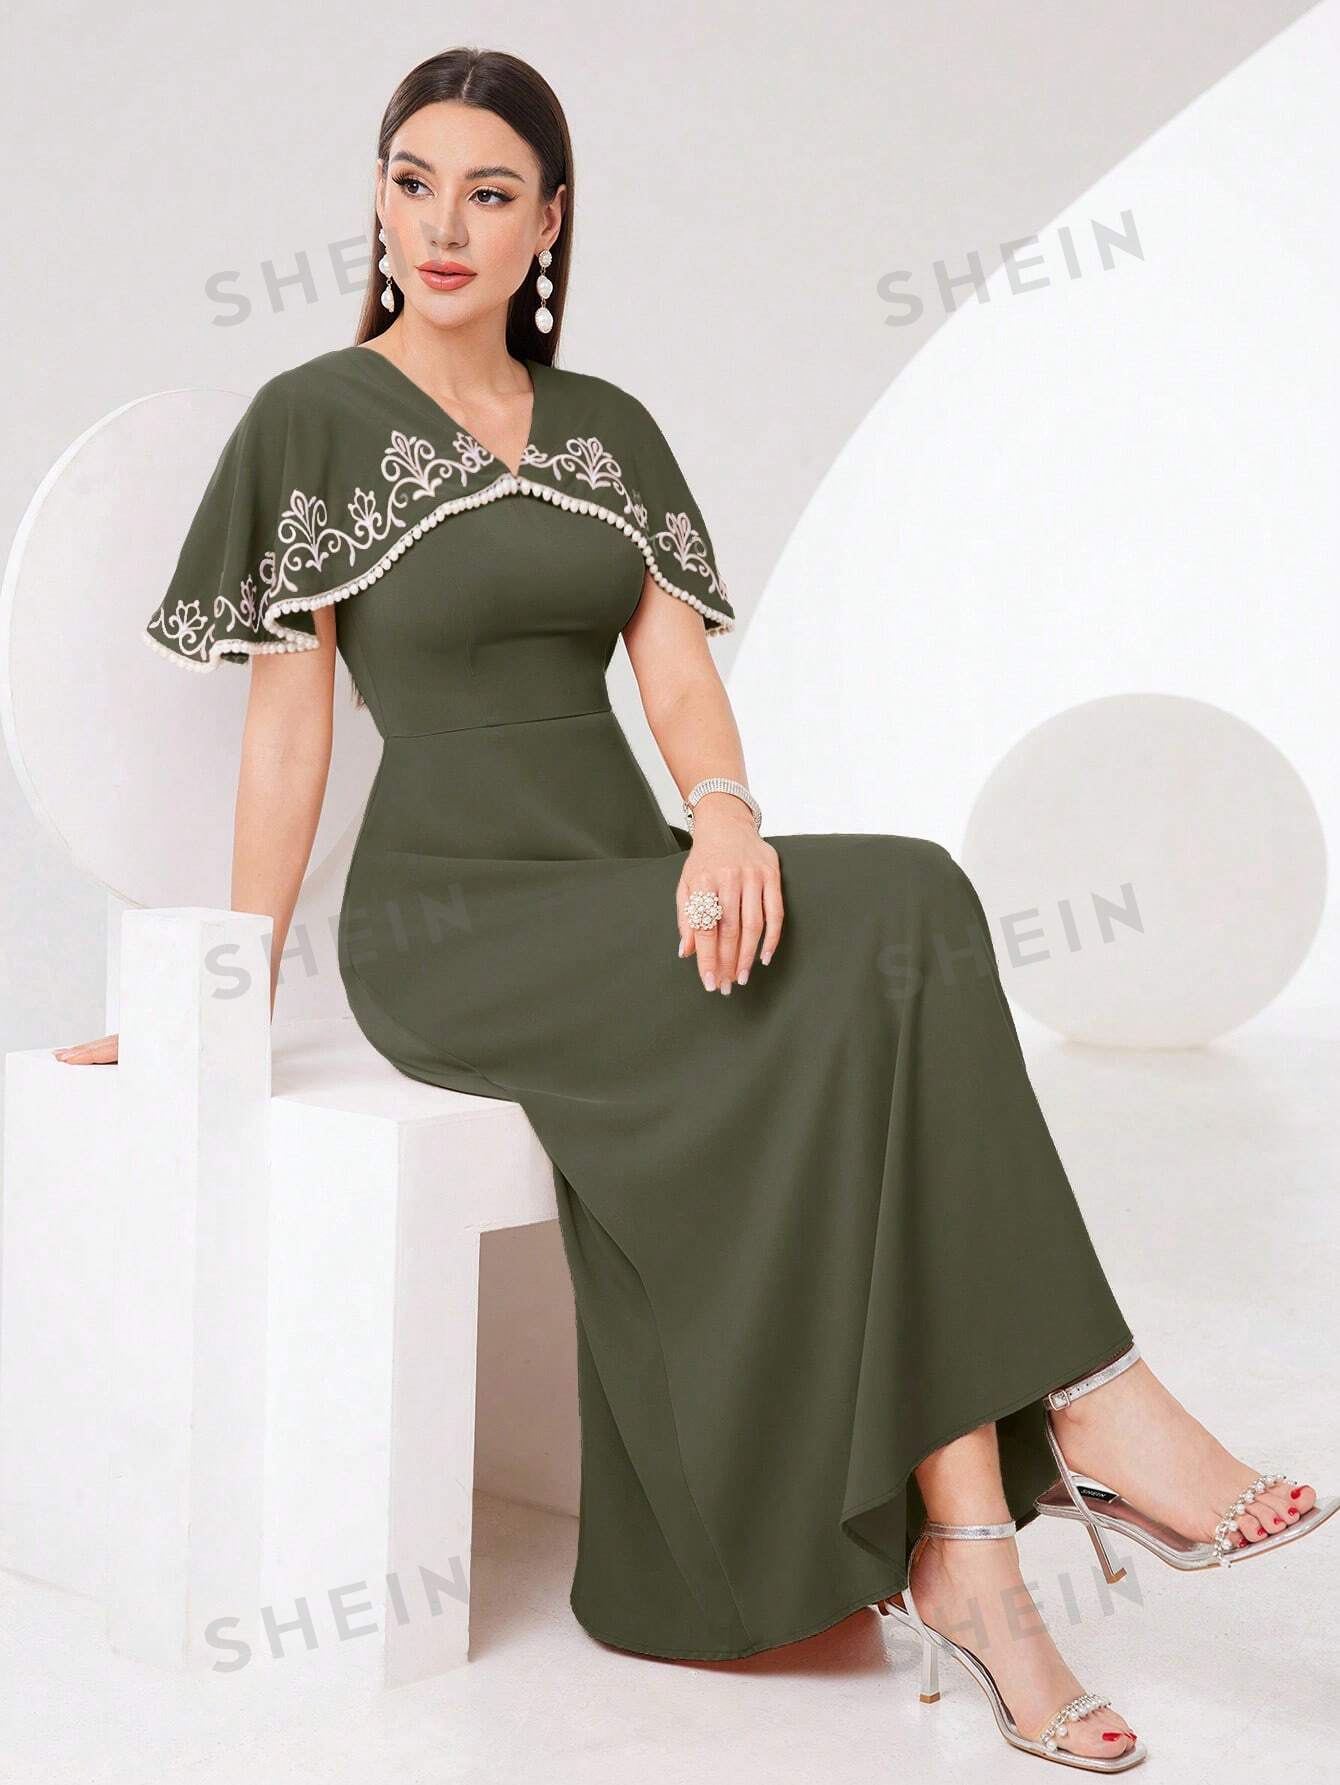 SHEIN Modely женское платье в арабском стиле с растительной вышивкой и шалевым воротником, оливково-зеленый женское длинное платье в мусульманском стиле длинное платье в арабском стиле вечернее платье в арабском стиле